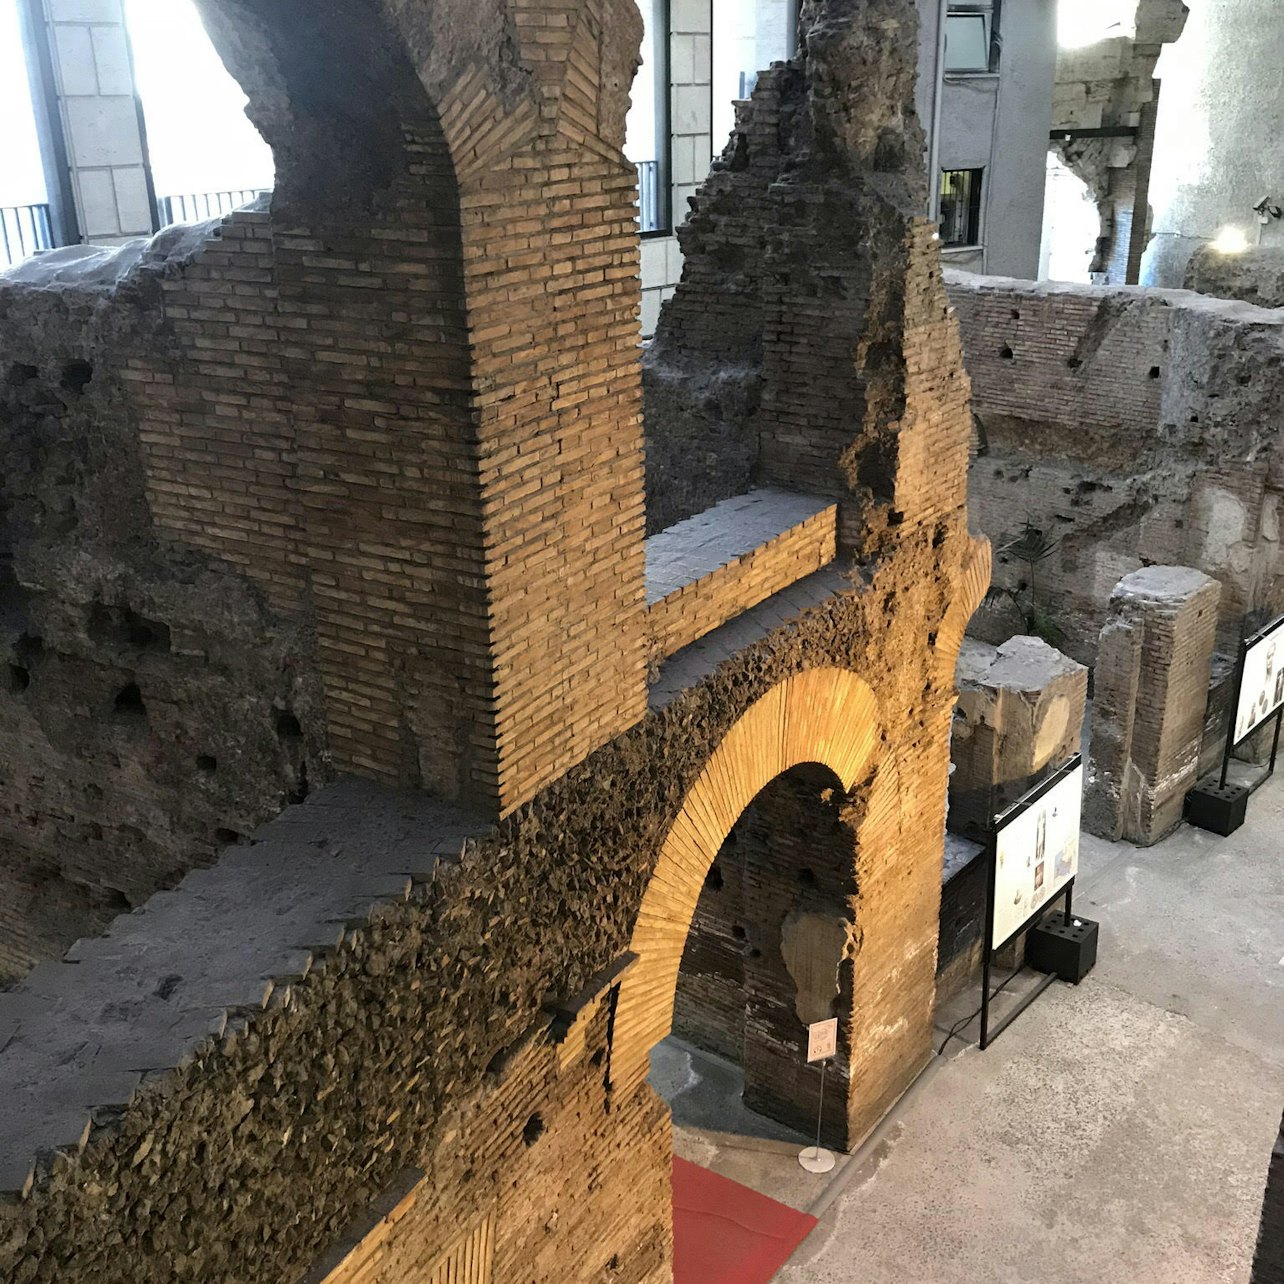 Piazza Navona Underground - The Stadium of Domitian - Accommodations in Rome